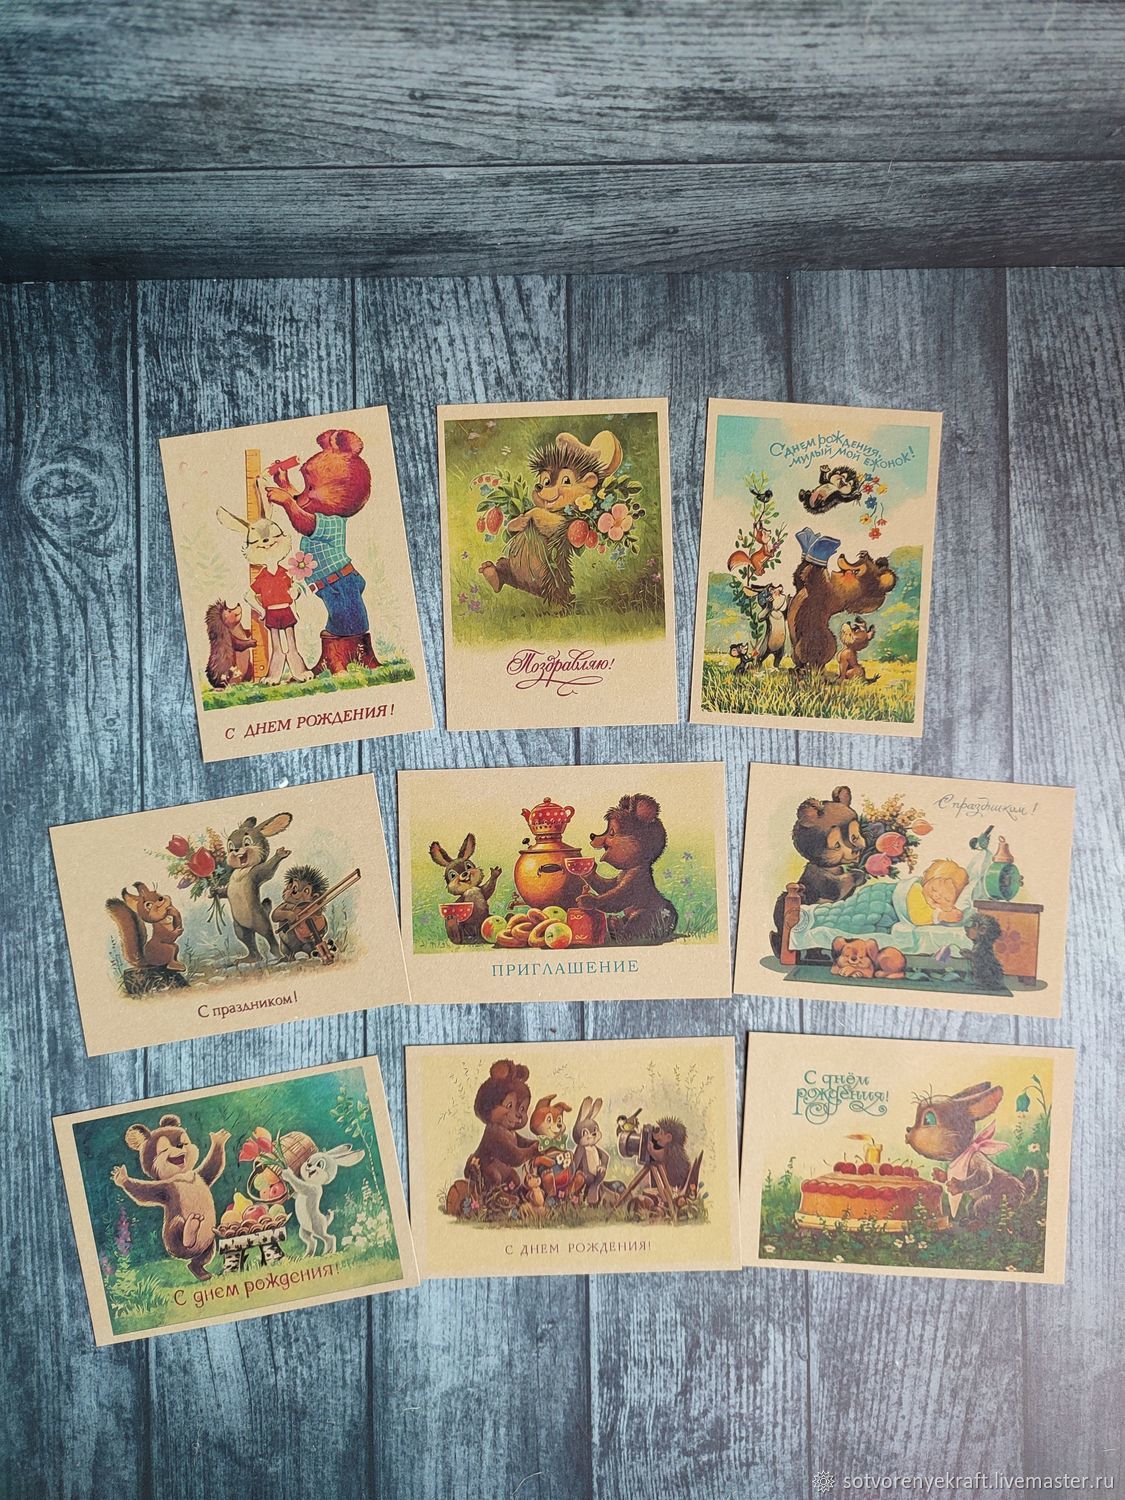 100 000 изображений по запросу Винтажные открытки дети доступны в рамках роялти-фри лицензии